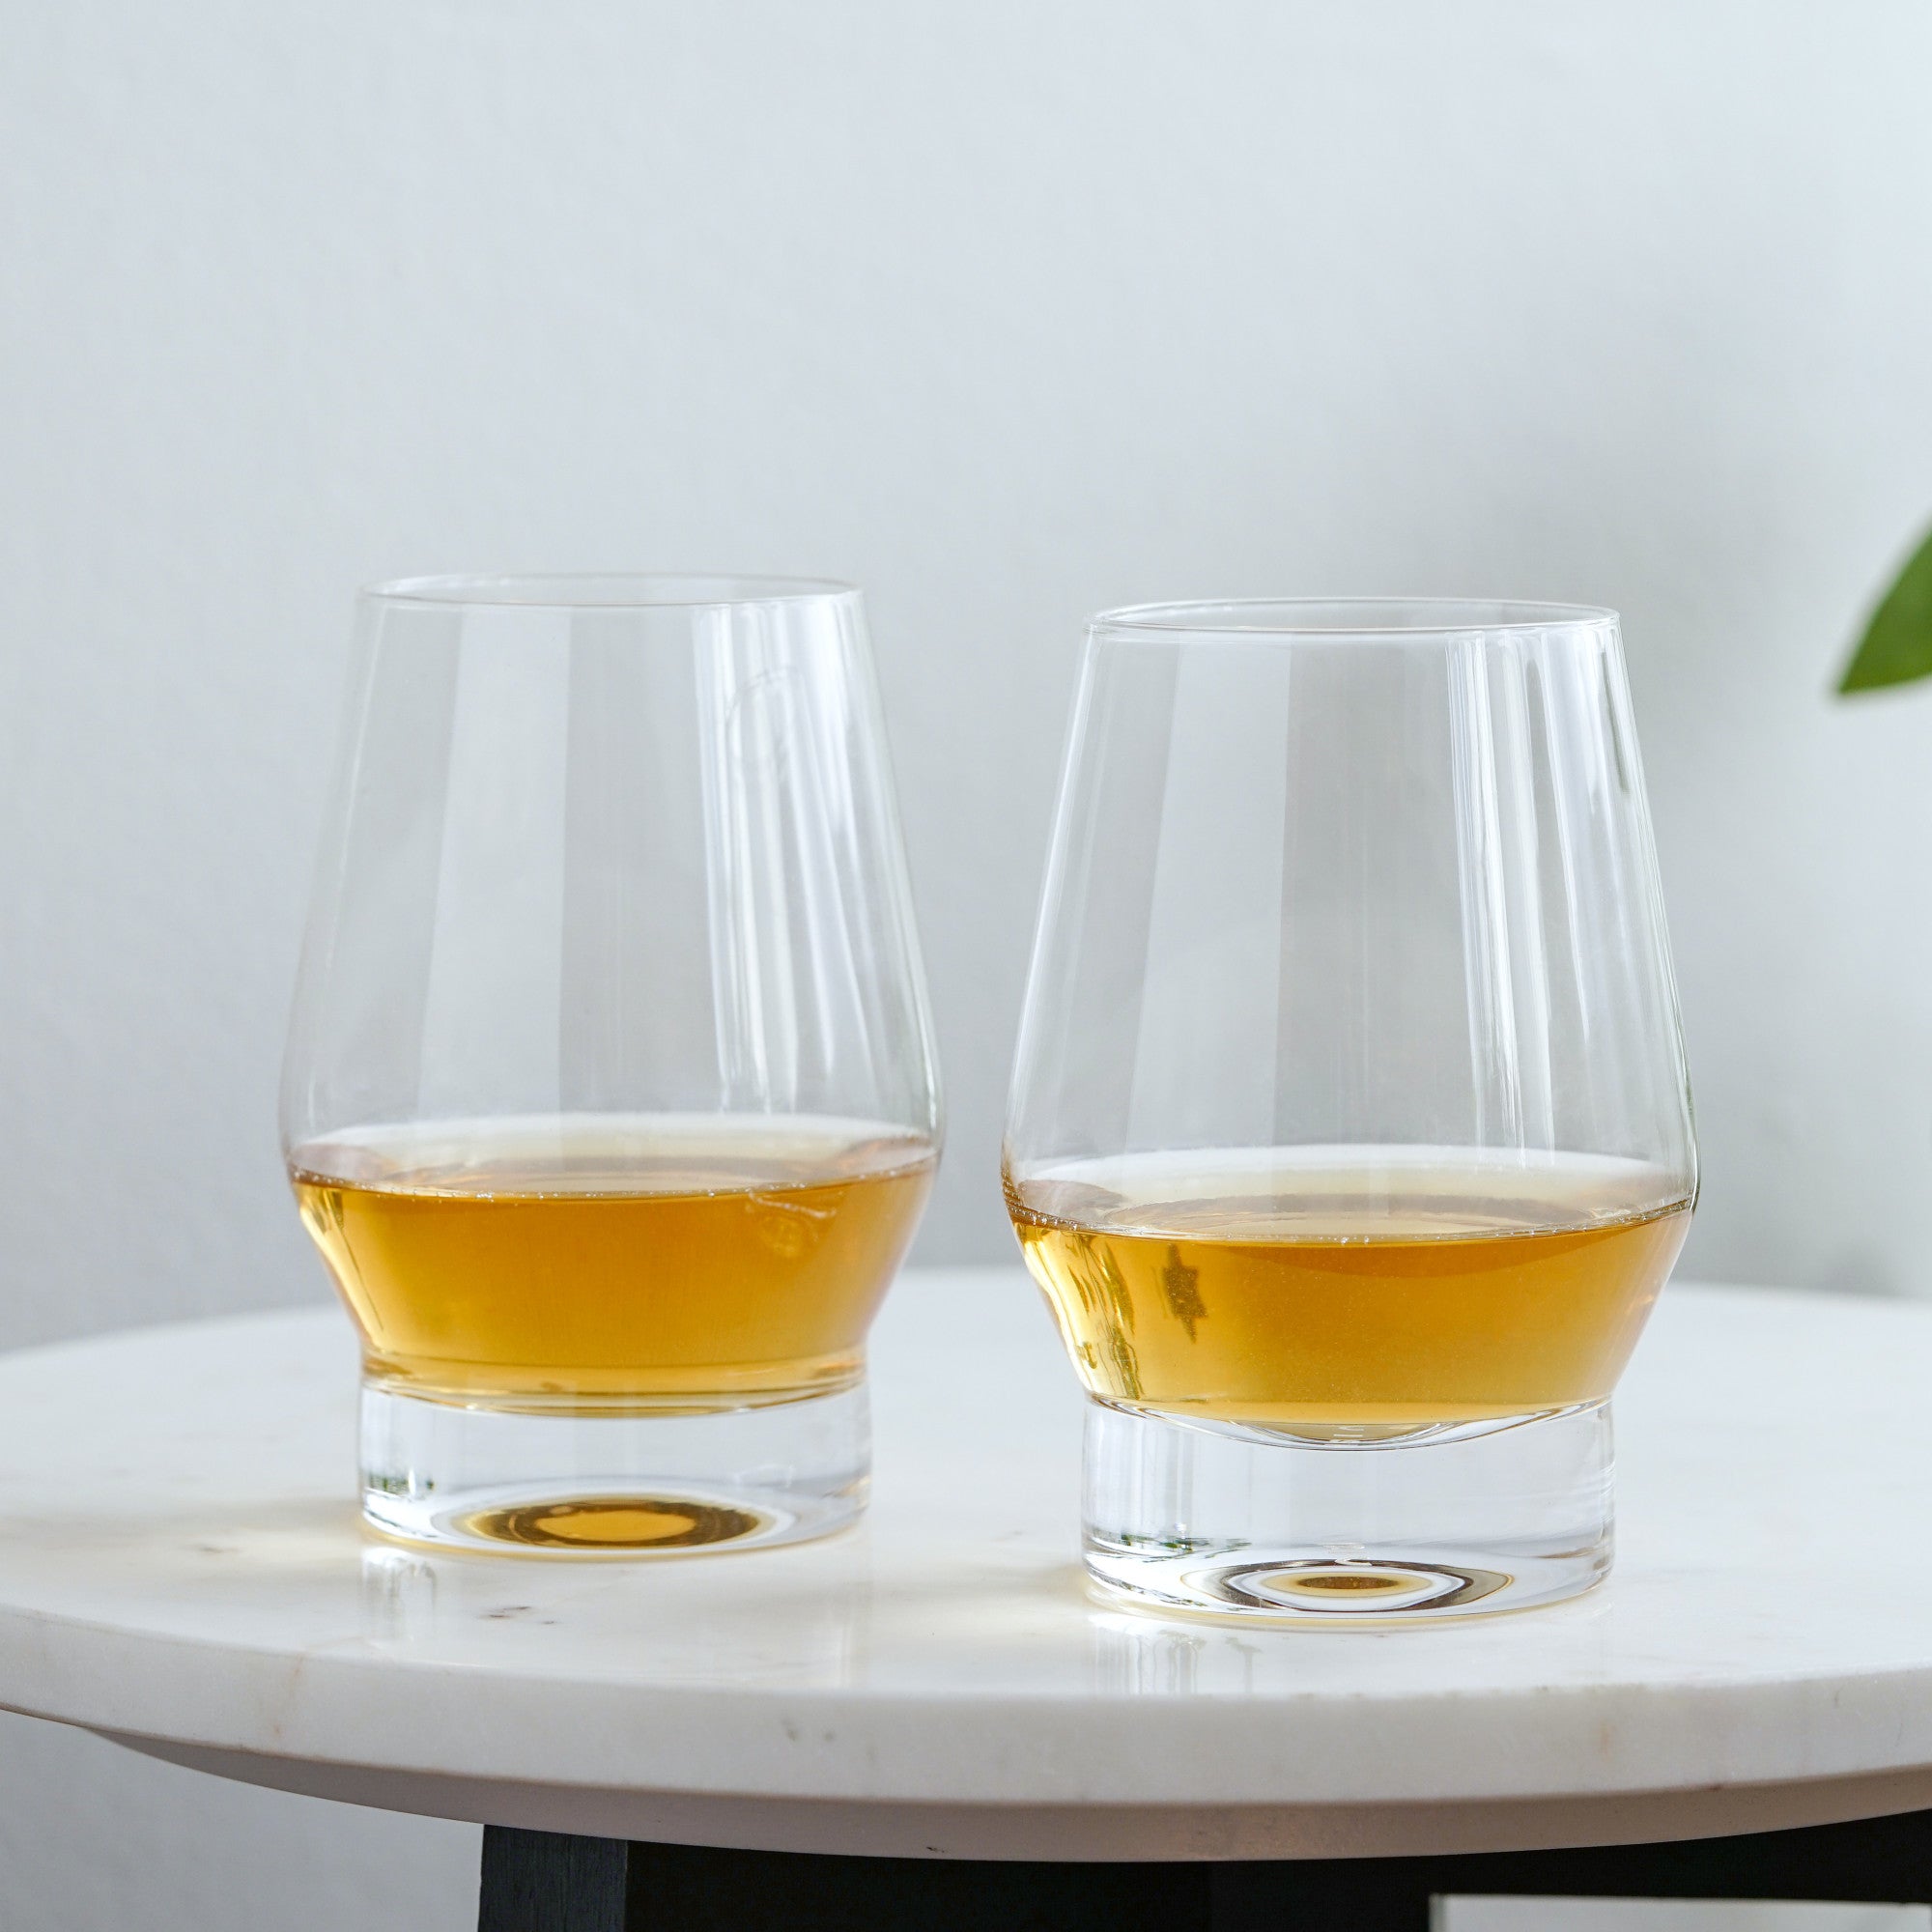 Heavy Base Crystal Whiskey Glasses by Viski (11020)